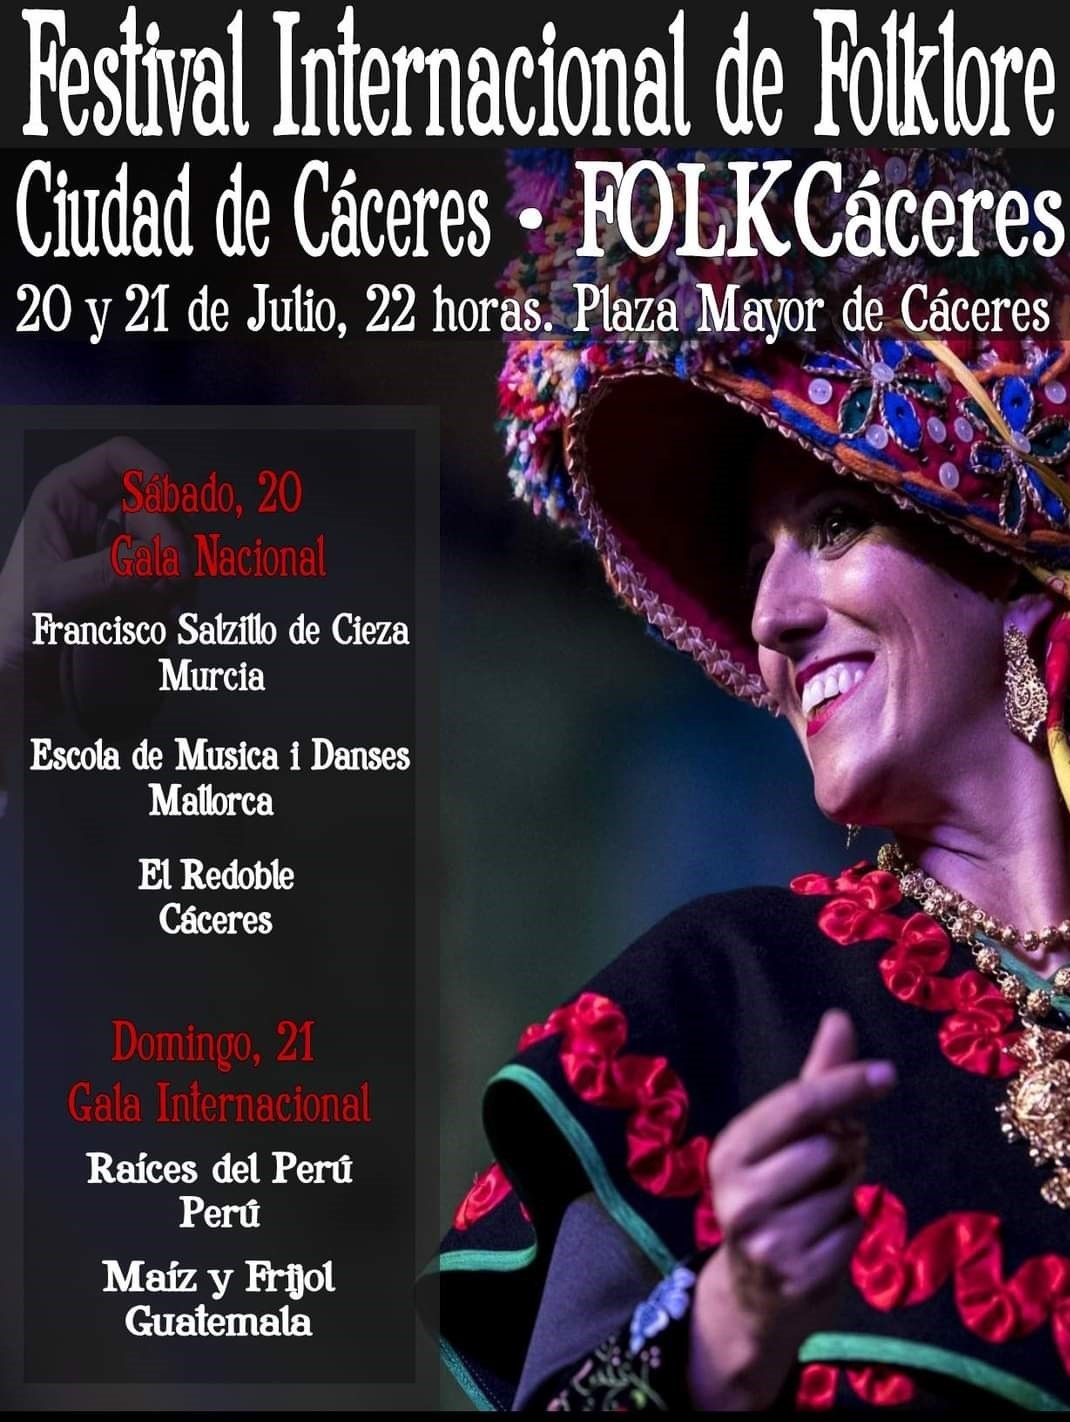 El Festival Internacional de Folklore llega a Cáceres los días 20 y 21 de julio con cinco agrupaciones